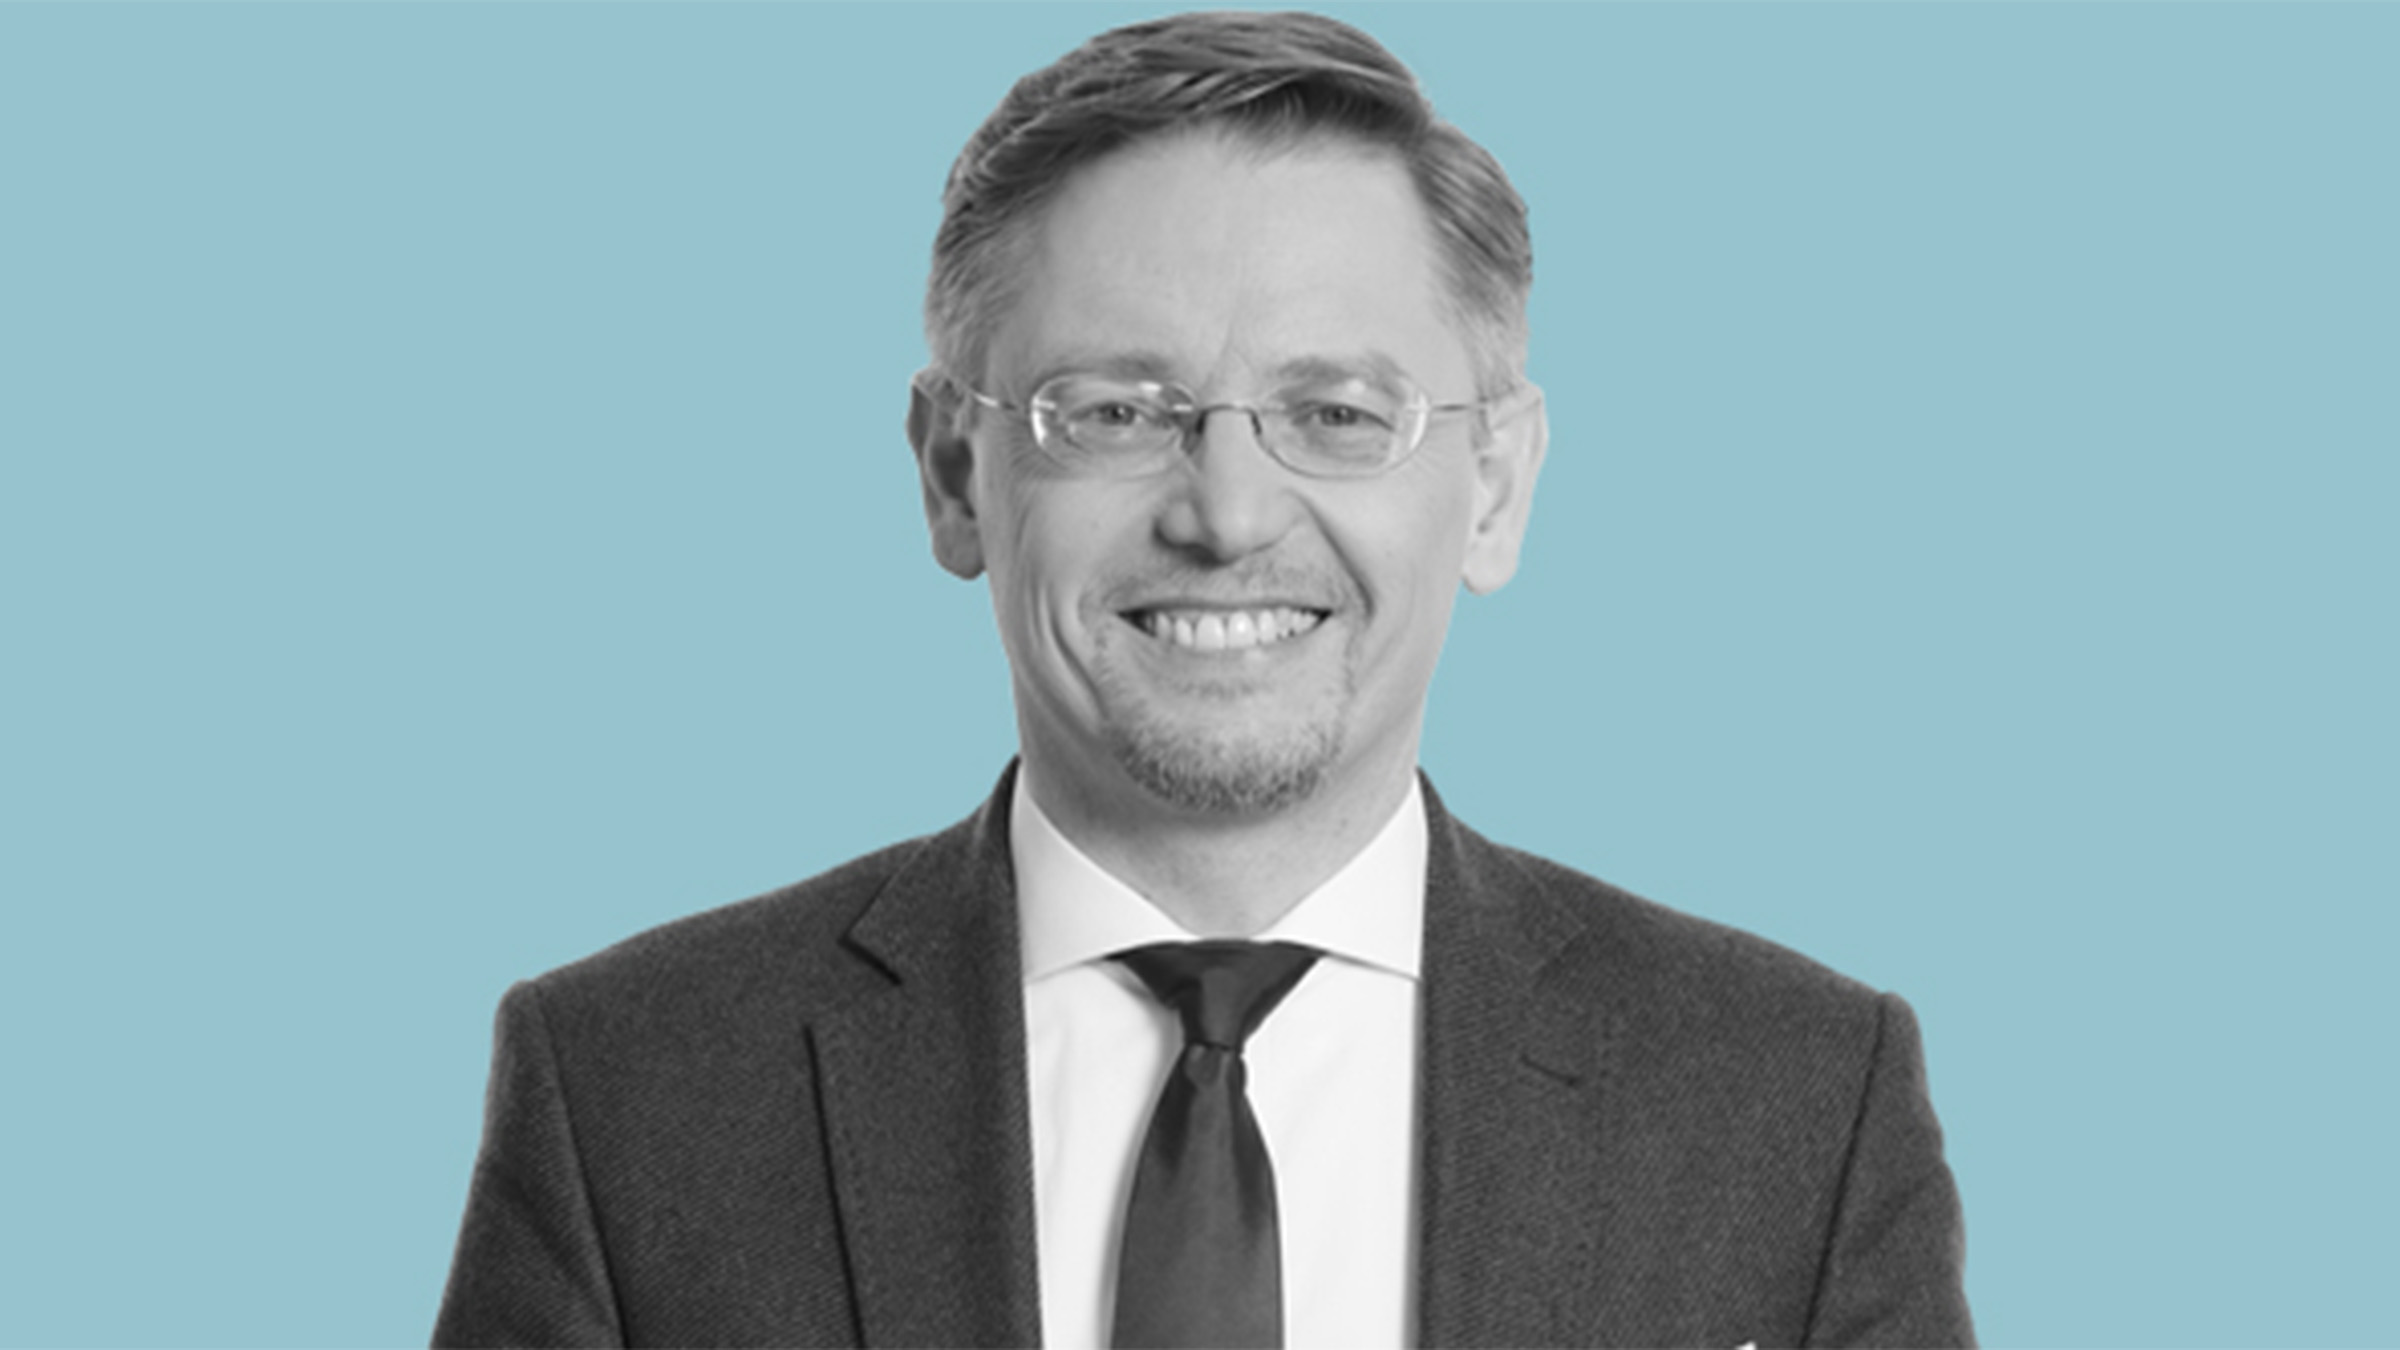 Tobias Reiß zum Beitrag "Wir packen´s an - Für Bayerns und Europas Zukunft"